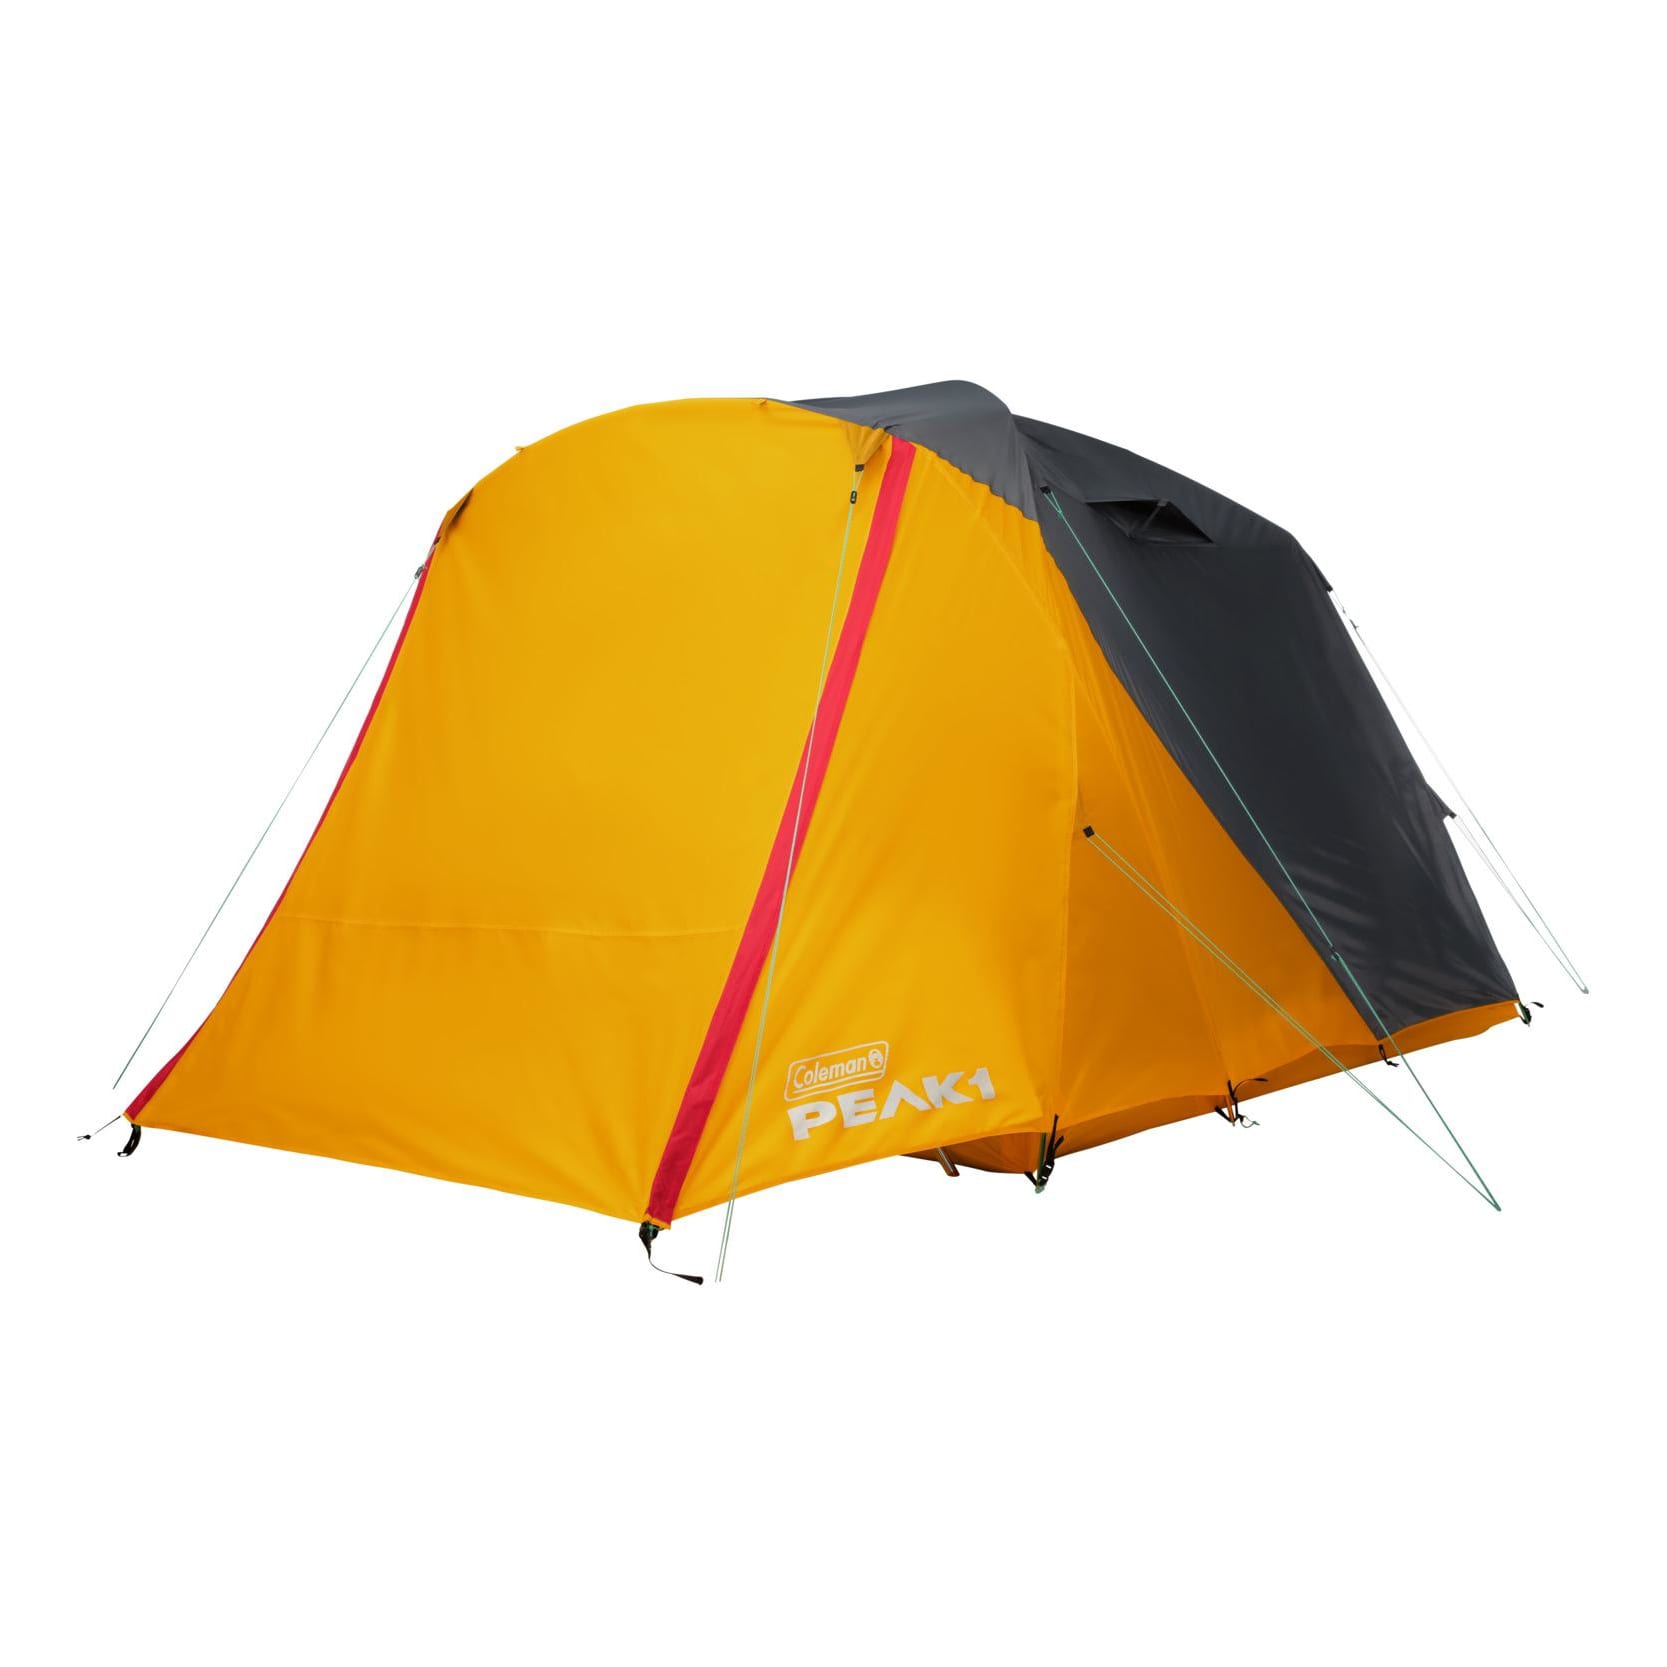 PEAK1™ 6-Person Dome Tent